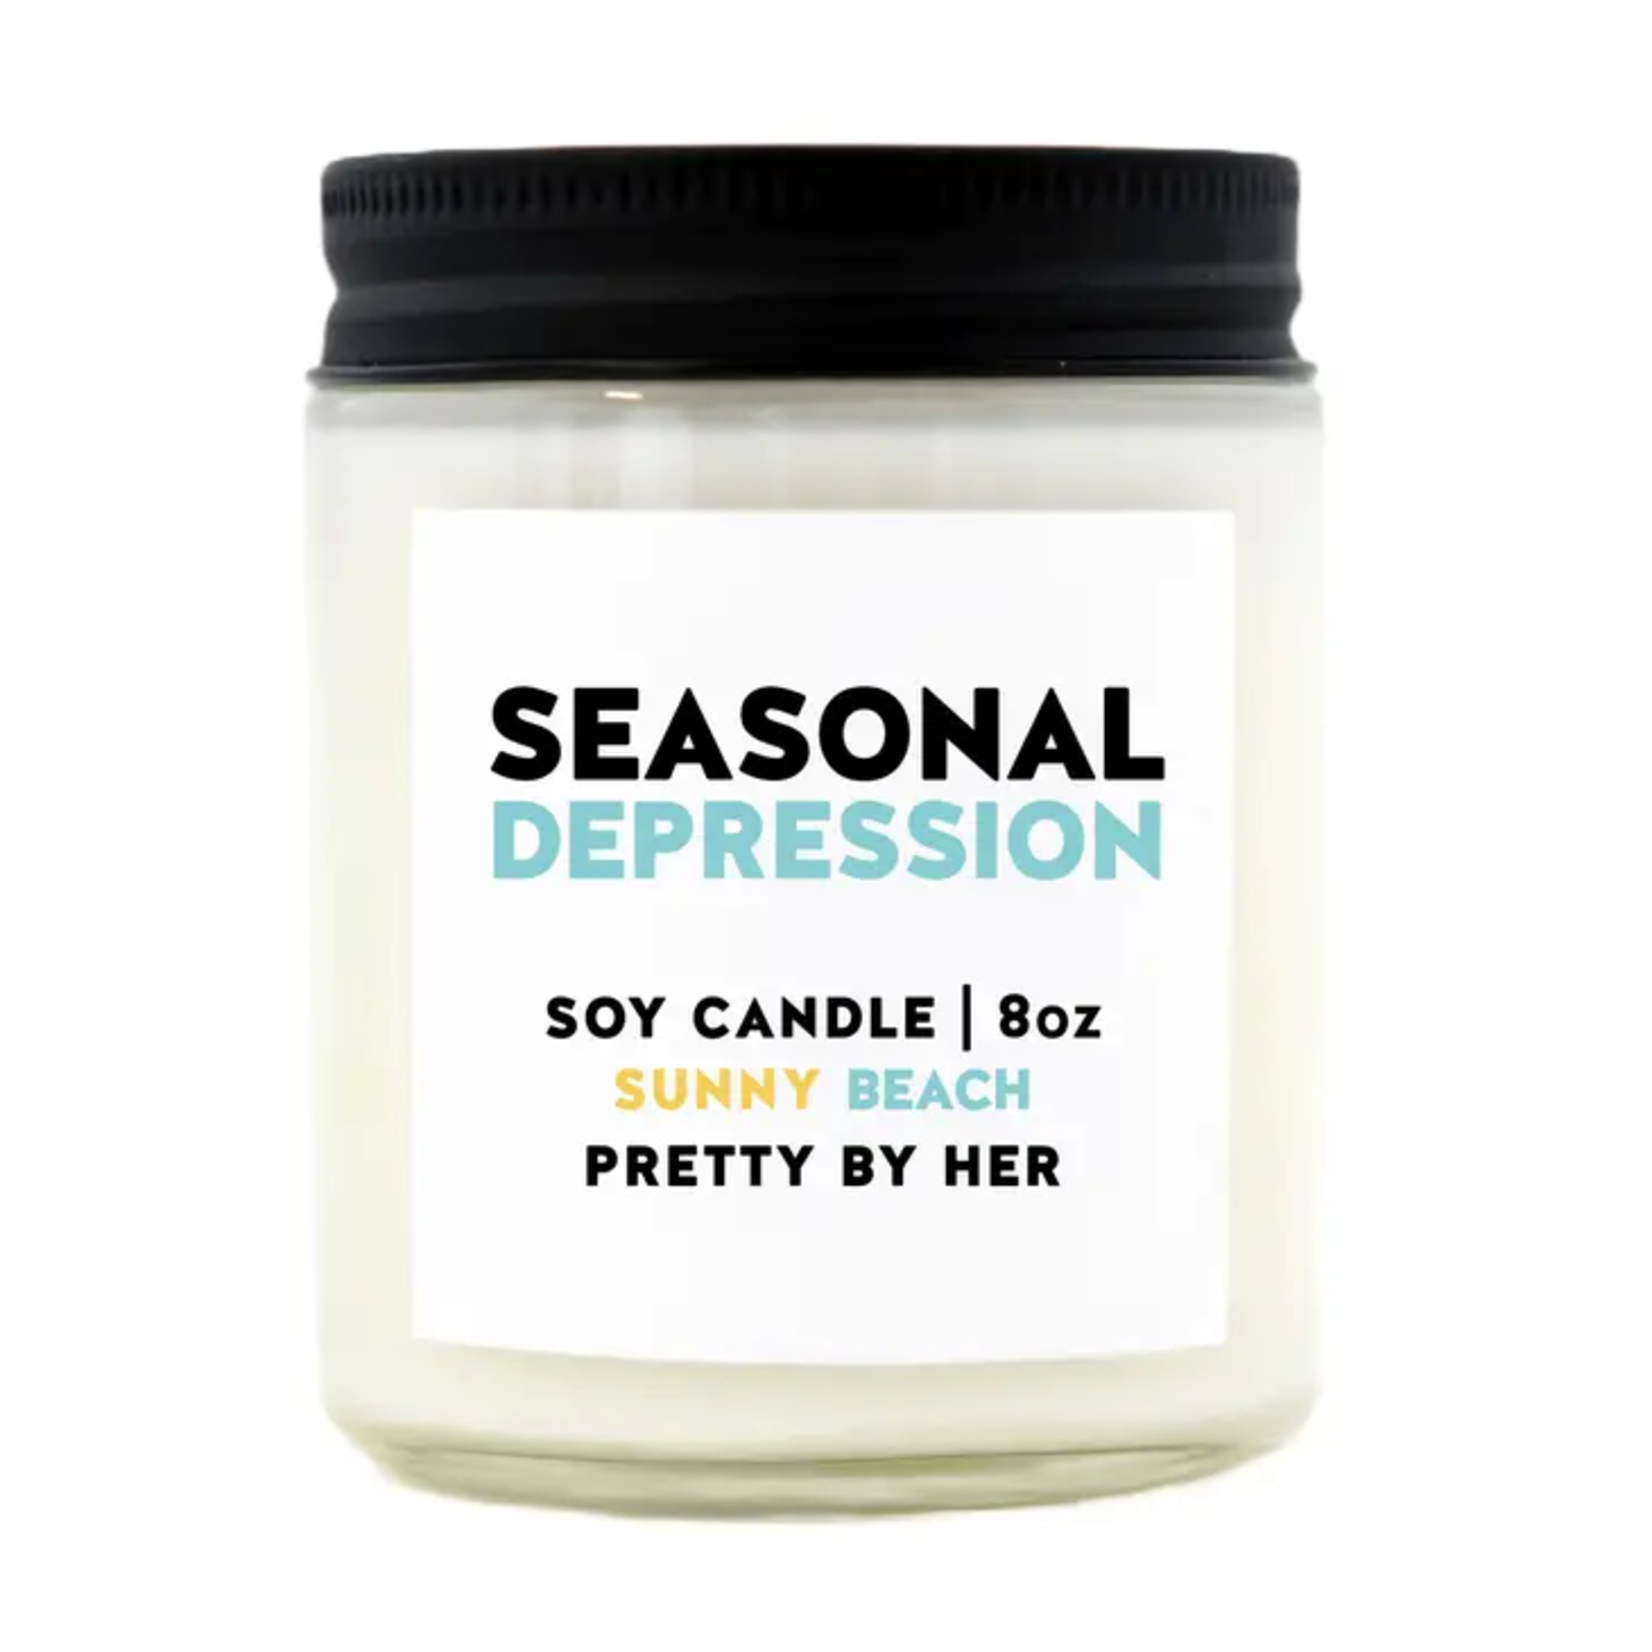 Soy Candle - Seasonal Depression